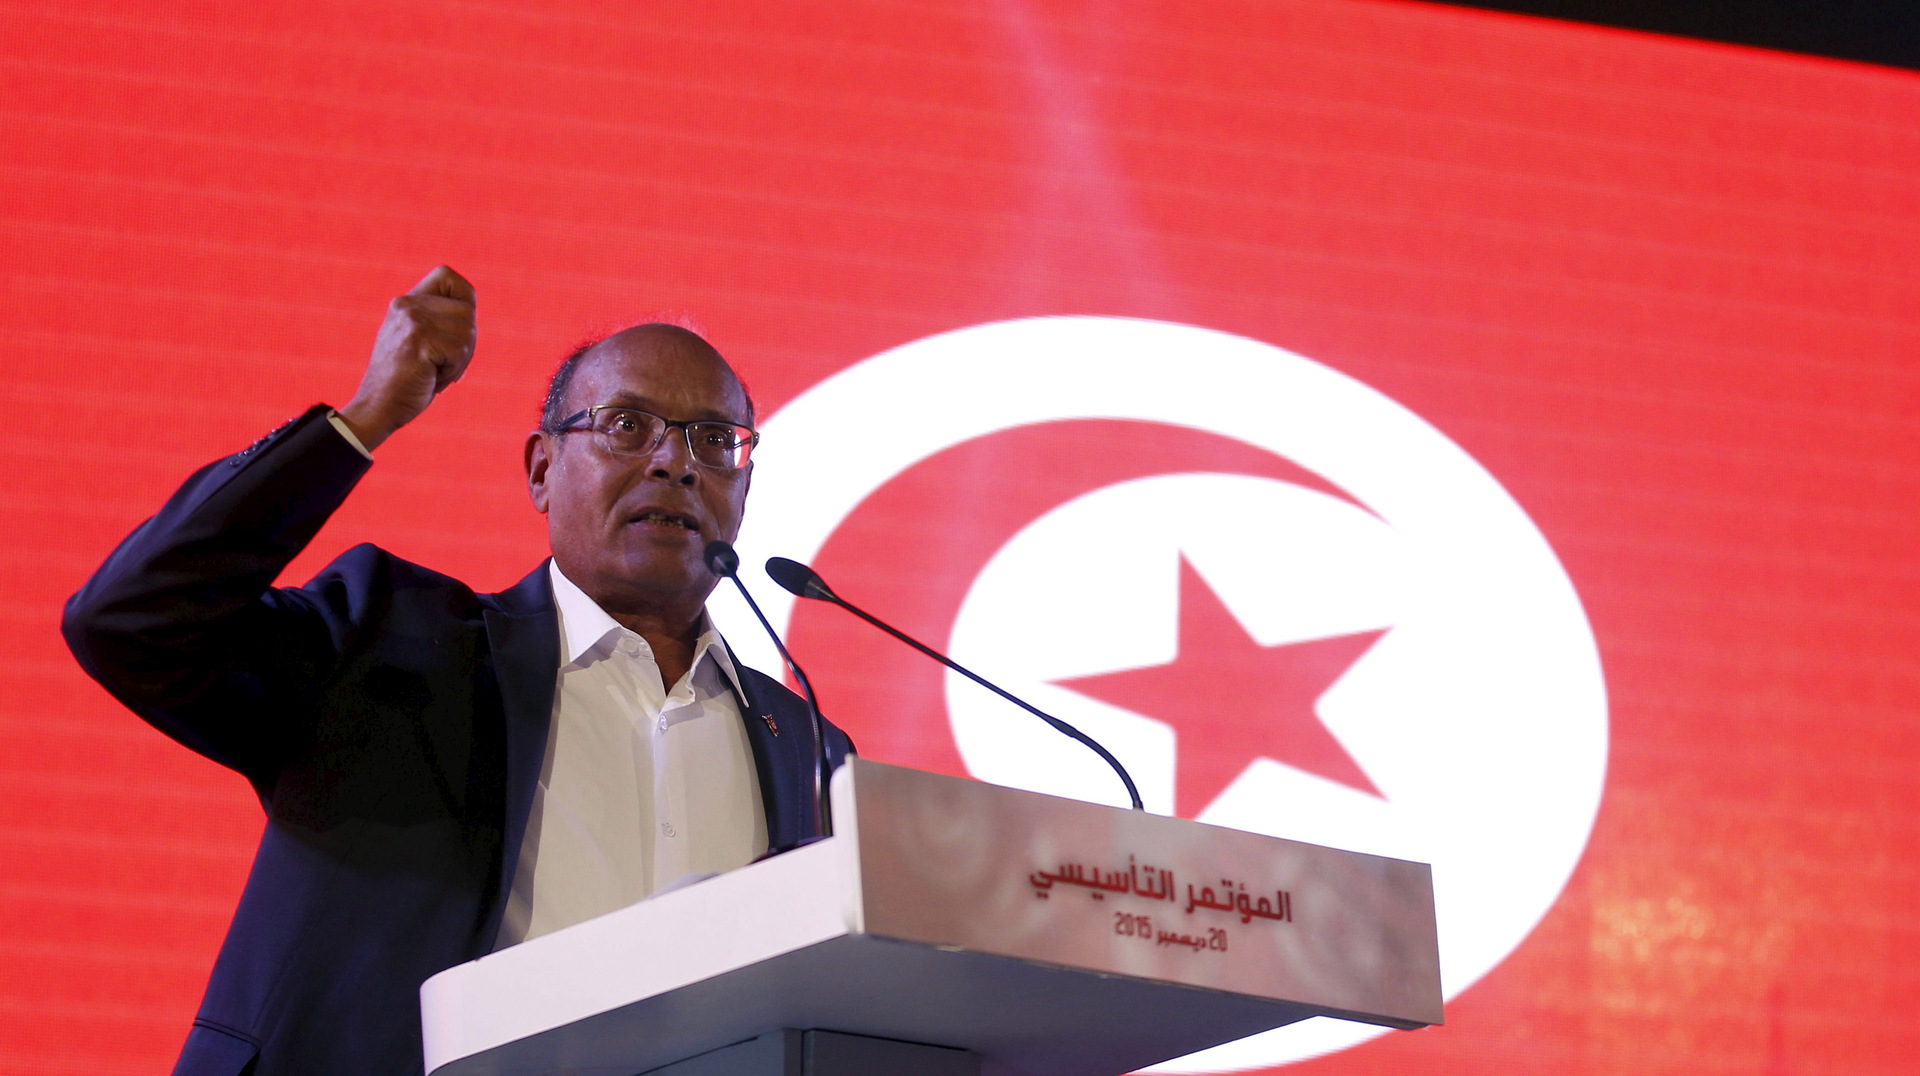 المرزوقي عن اتهامه ضمنيا بإحباط عقد القمة الفرانكفونية بتونس: أنا لا أقر بذلك فقط بل أفتخر